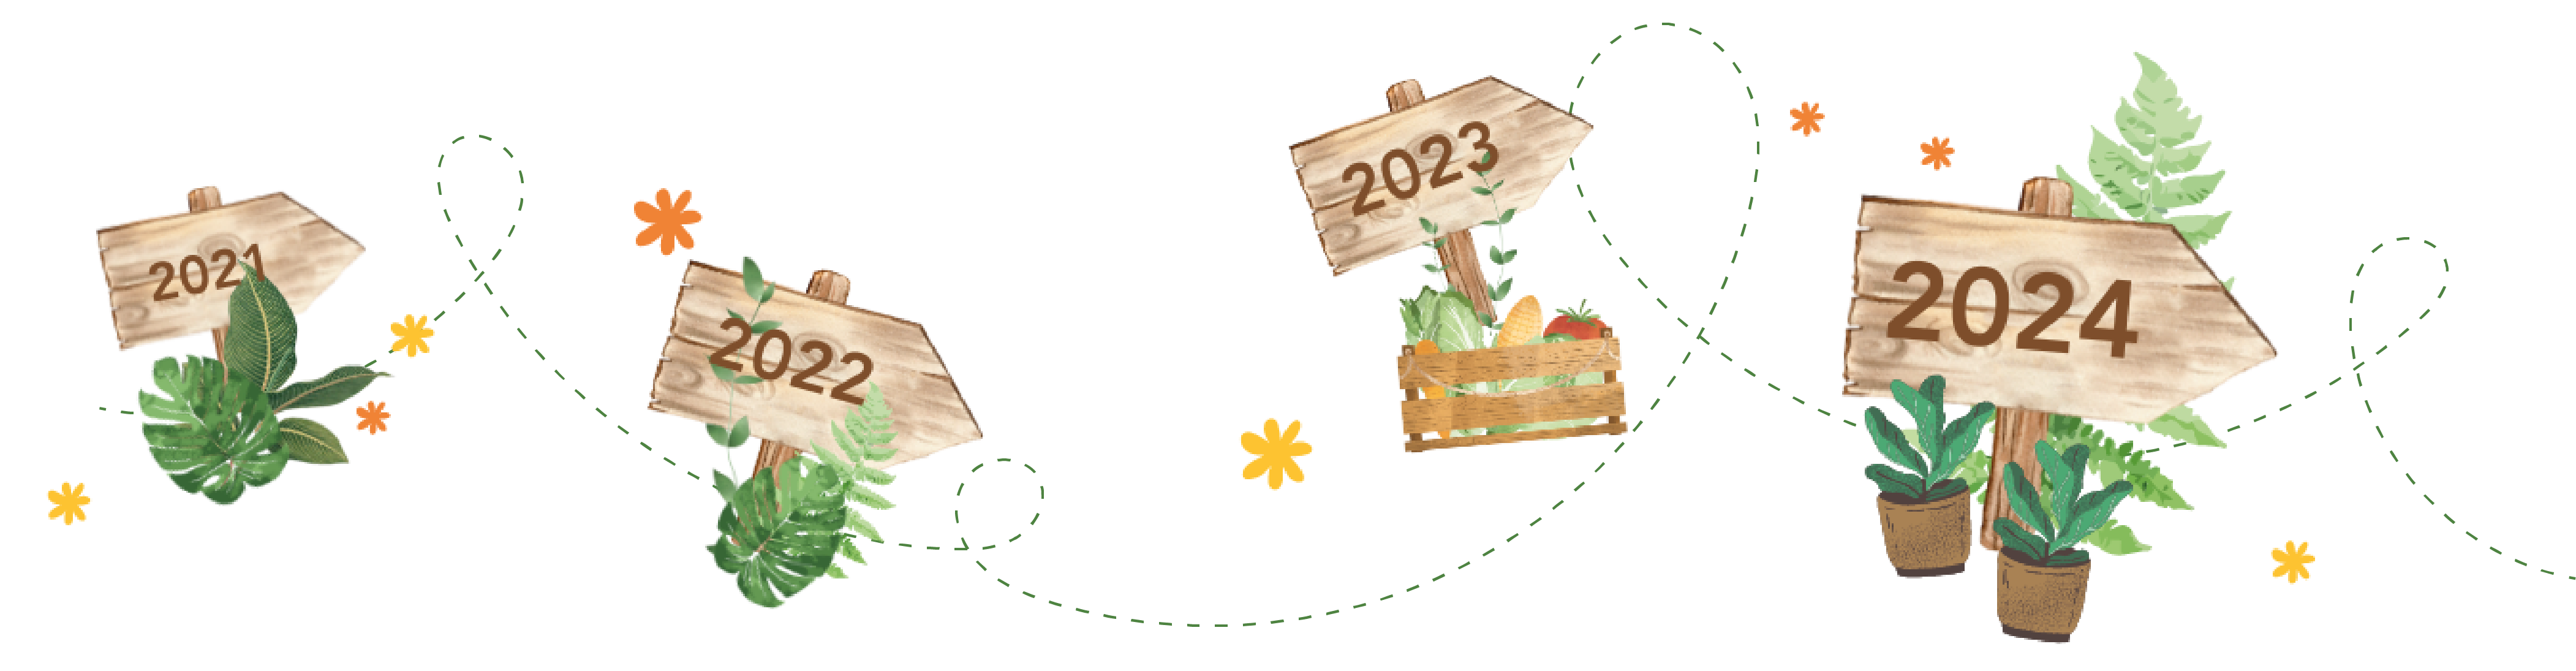 frise-terrattitude-année-2024-2023-2022-2021